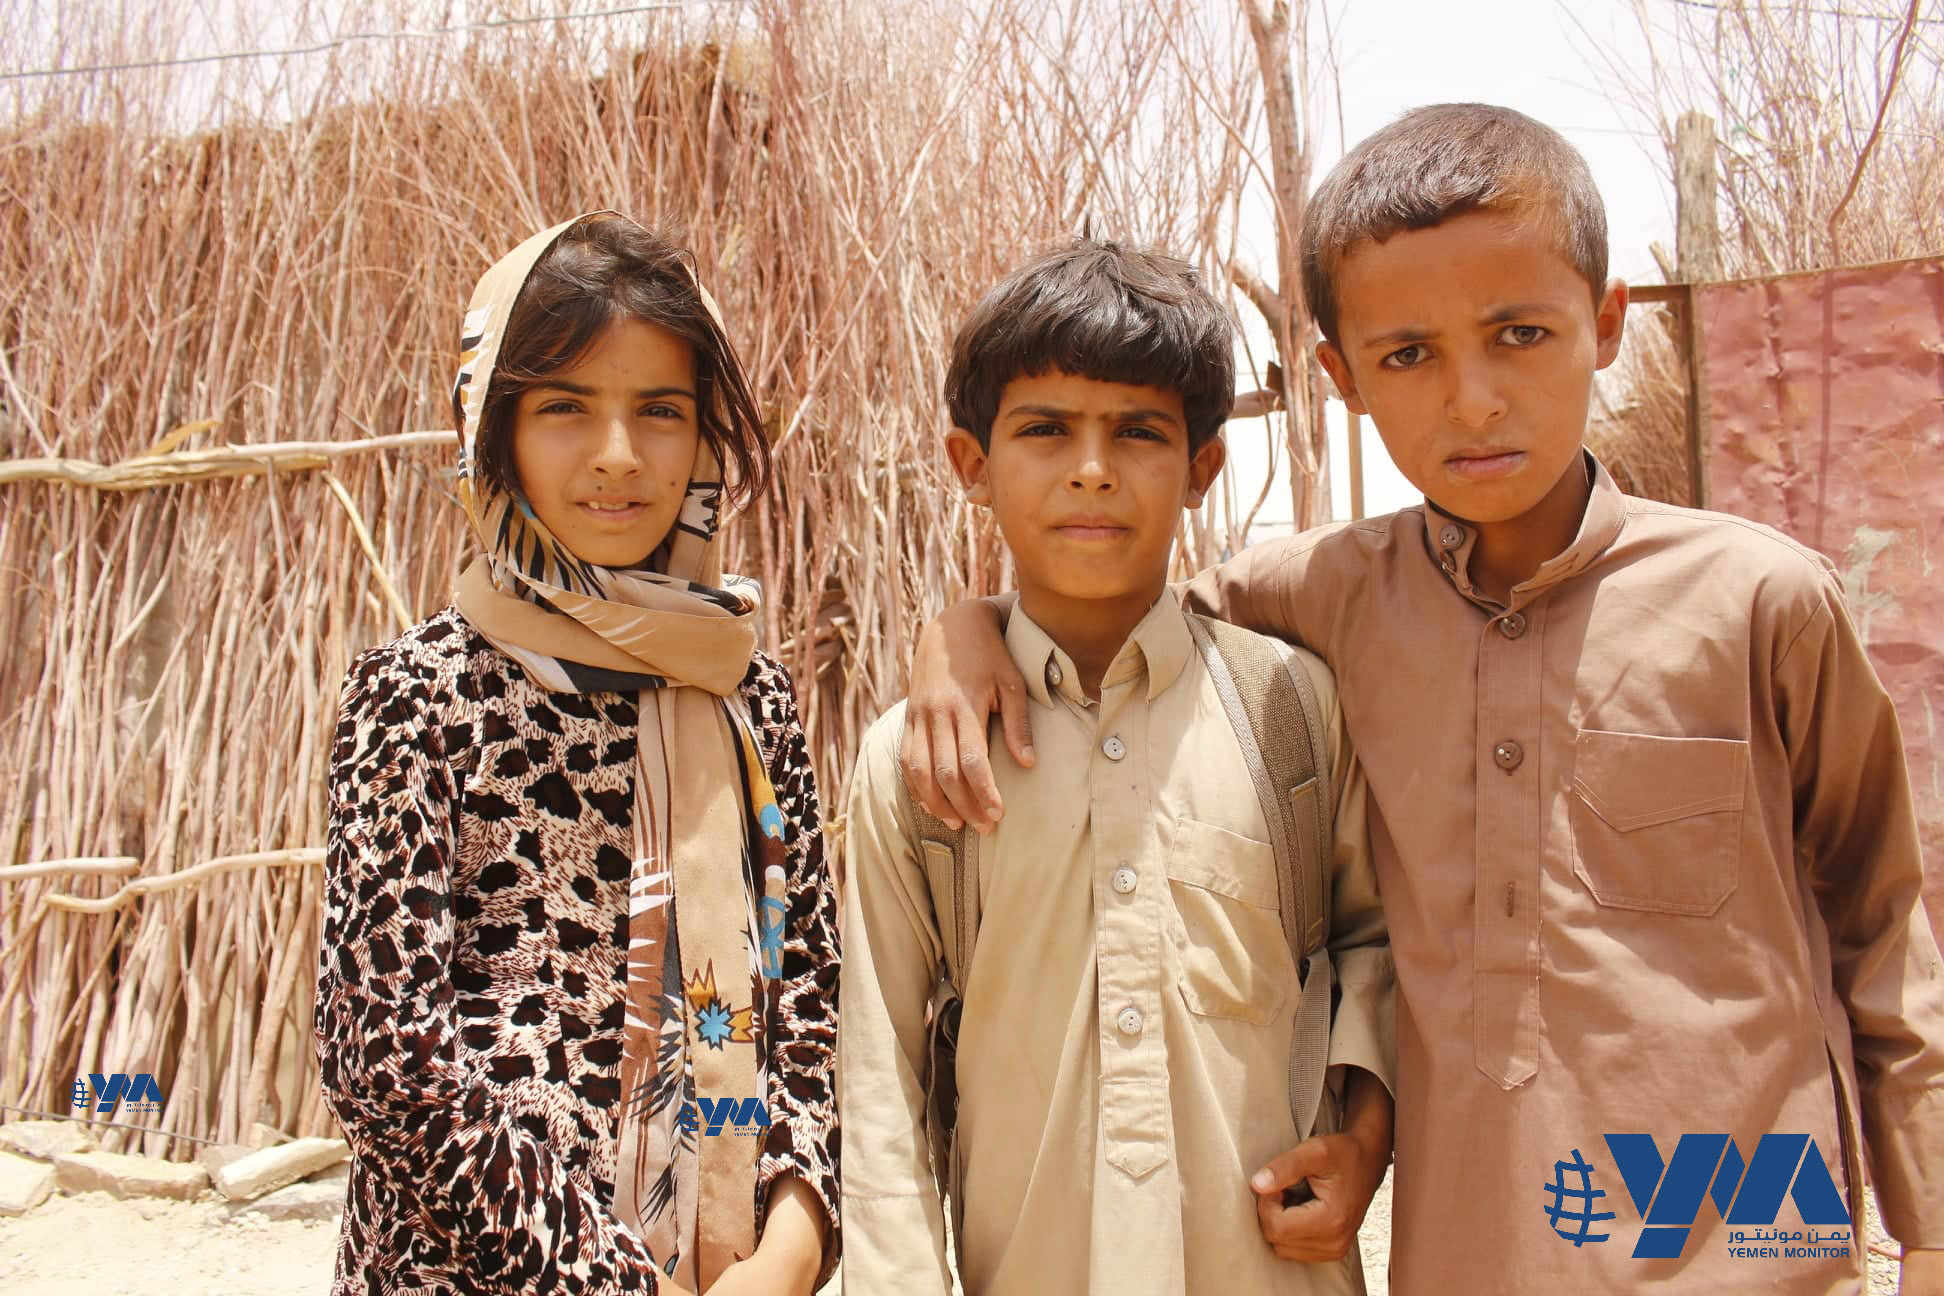 تقرير: 60٪ من الأطفال الذين تعرضت مدارسهم للهجوم في اليمن لم يعودوا إلى التعليم